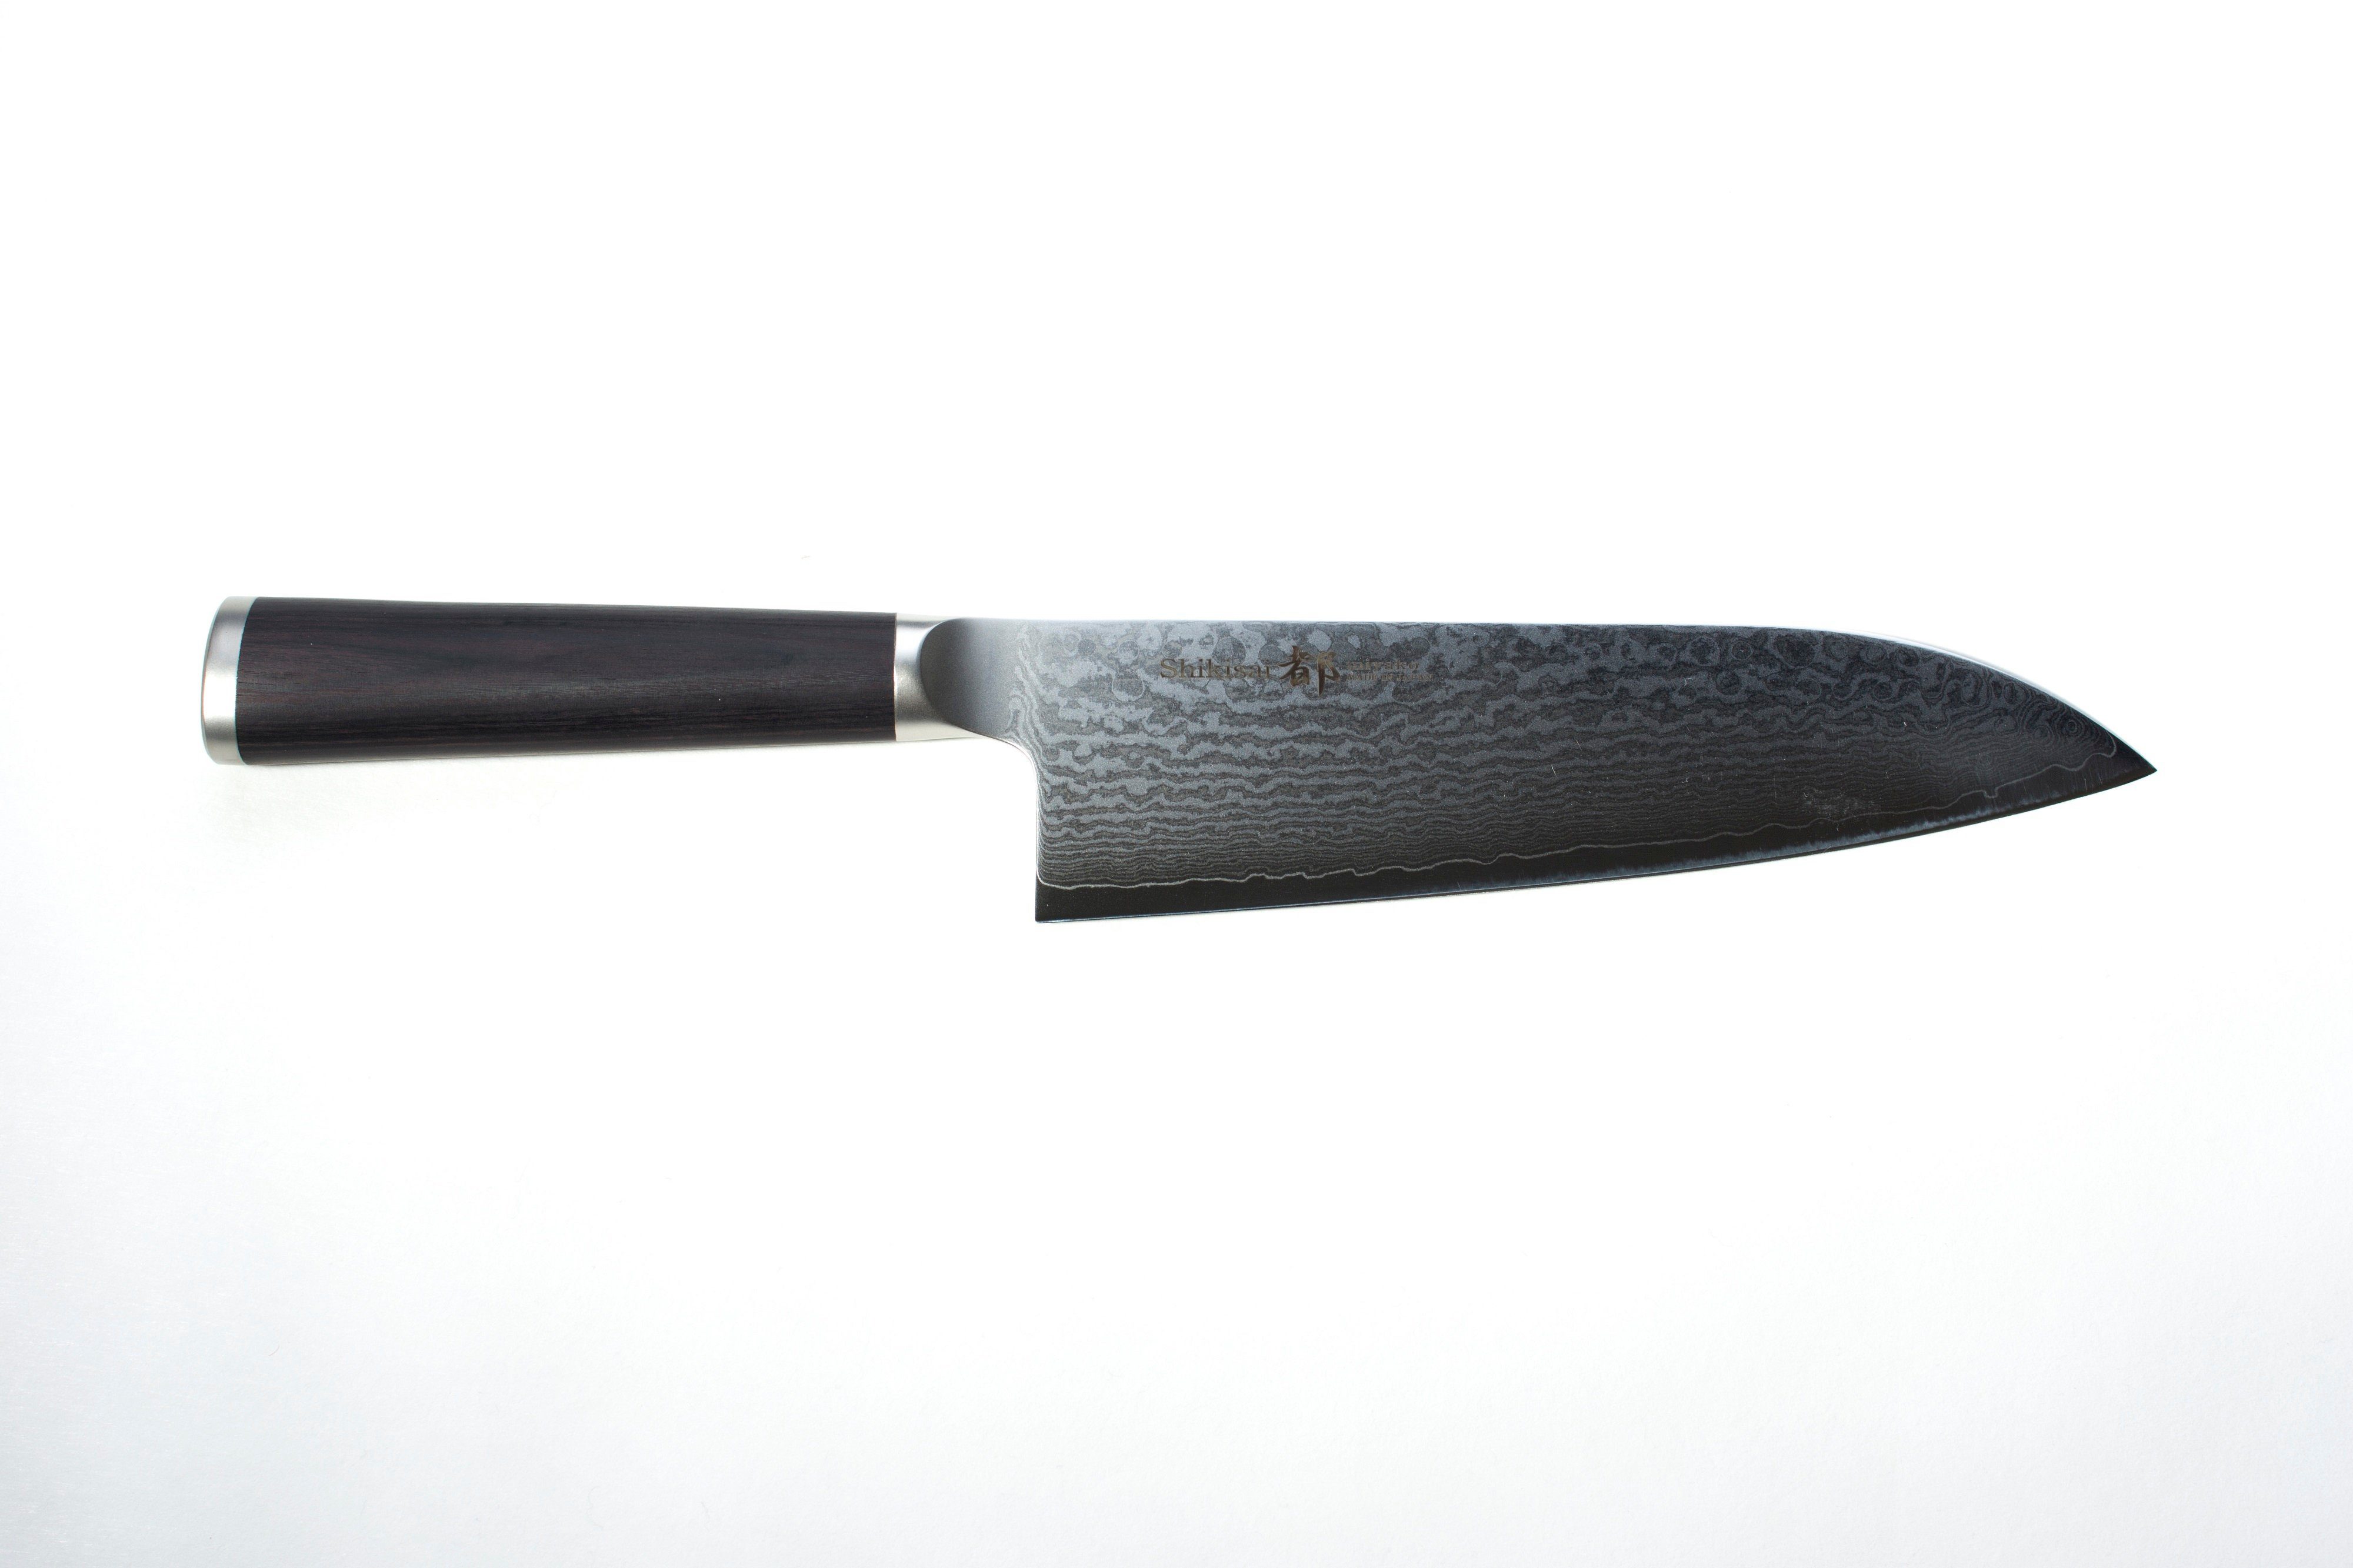 Shizu Hamono Japan Damastmesser Santoku Messer 18 cm Profi Kochmesser